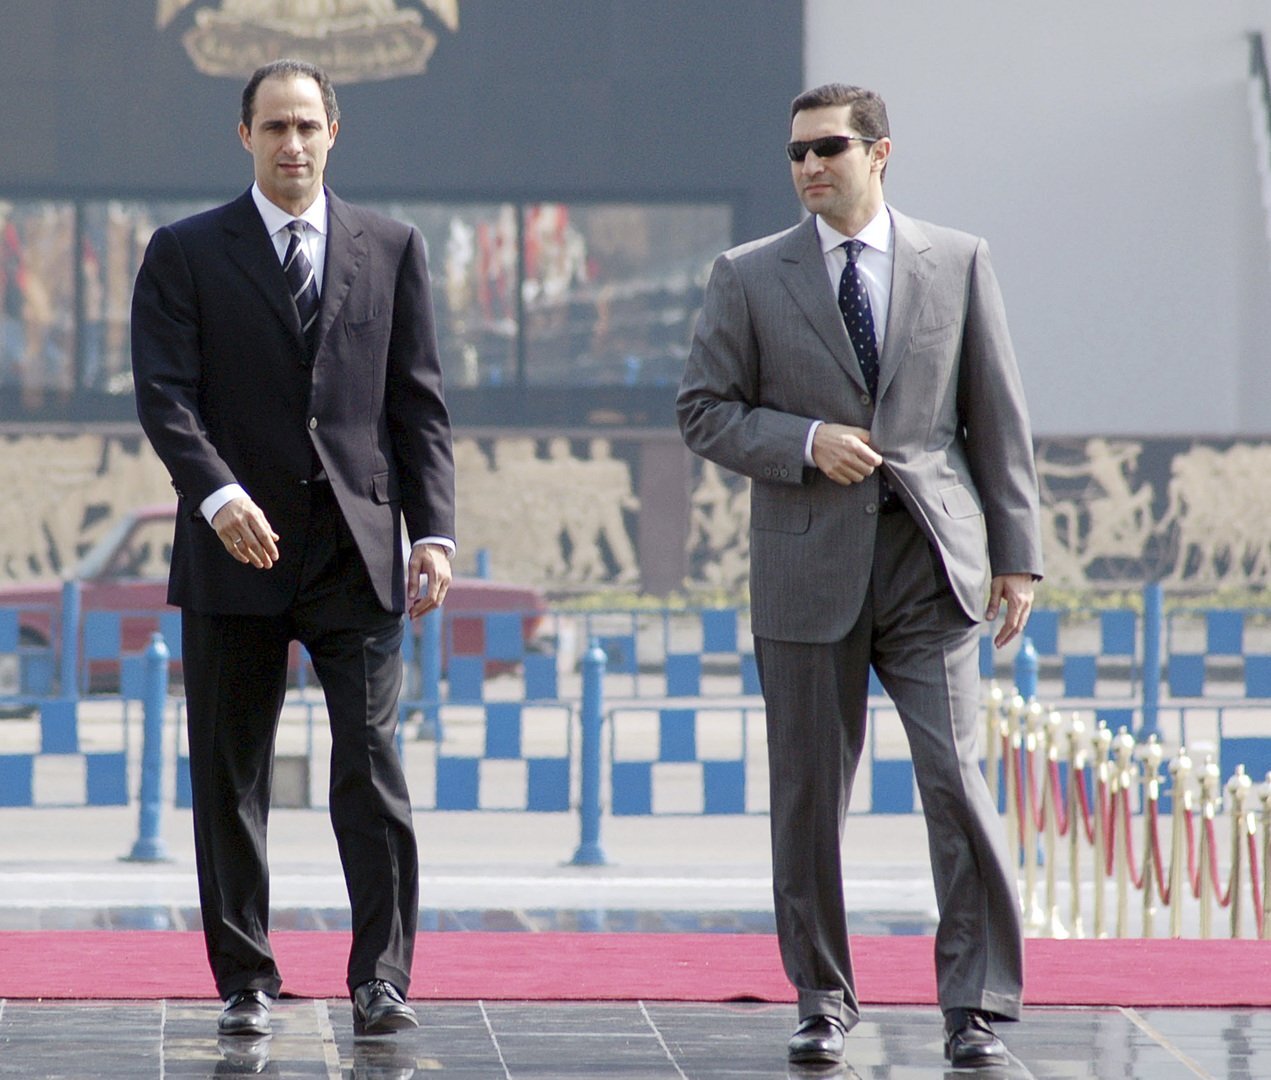 علاء مبارك يرد على مزاعم باستيلاء شقيقه جمال على 75 طنا من الذهب